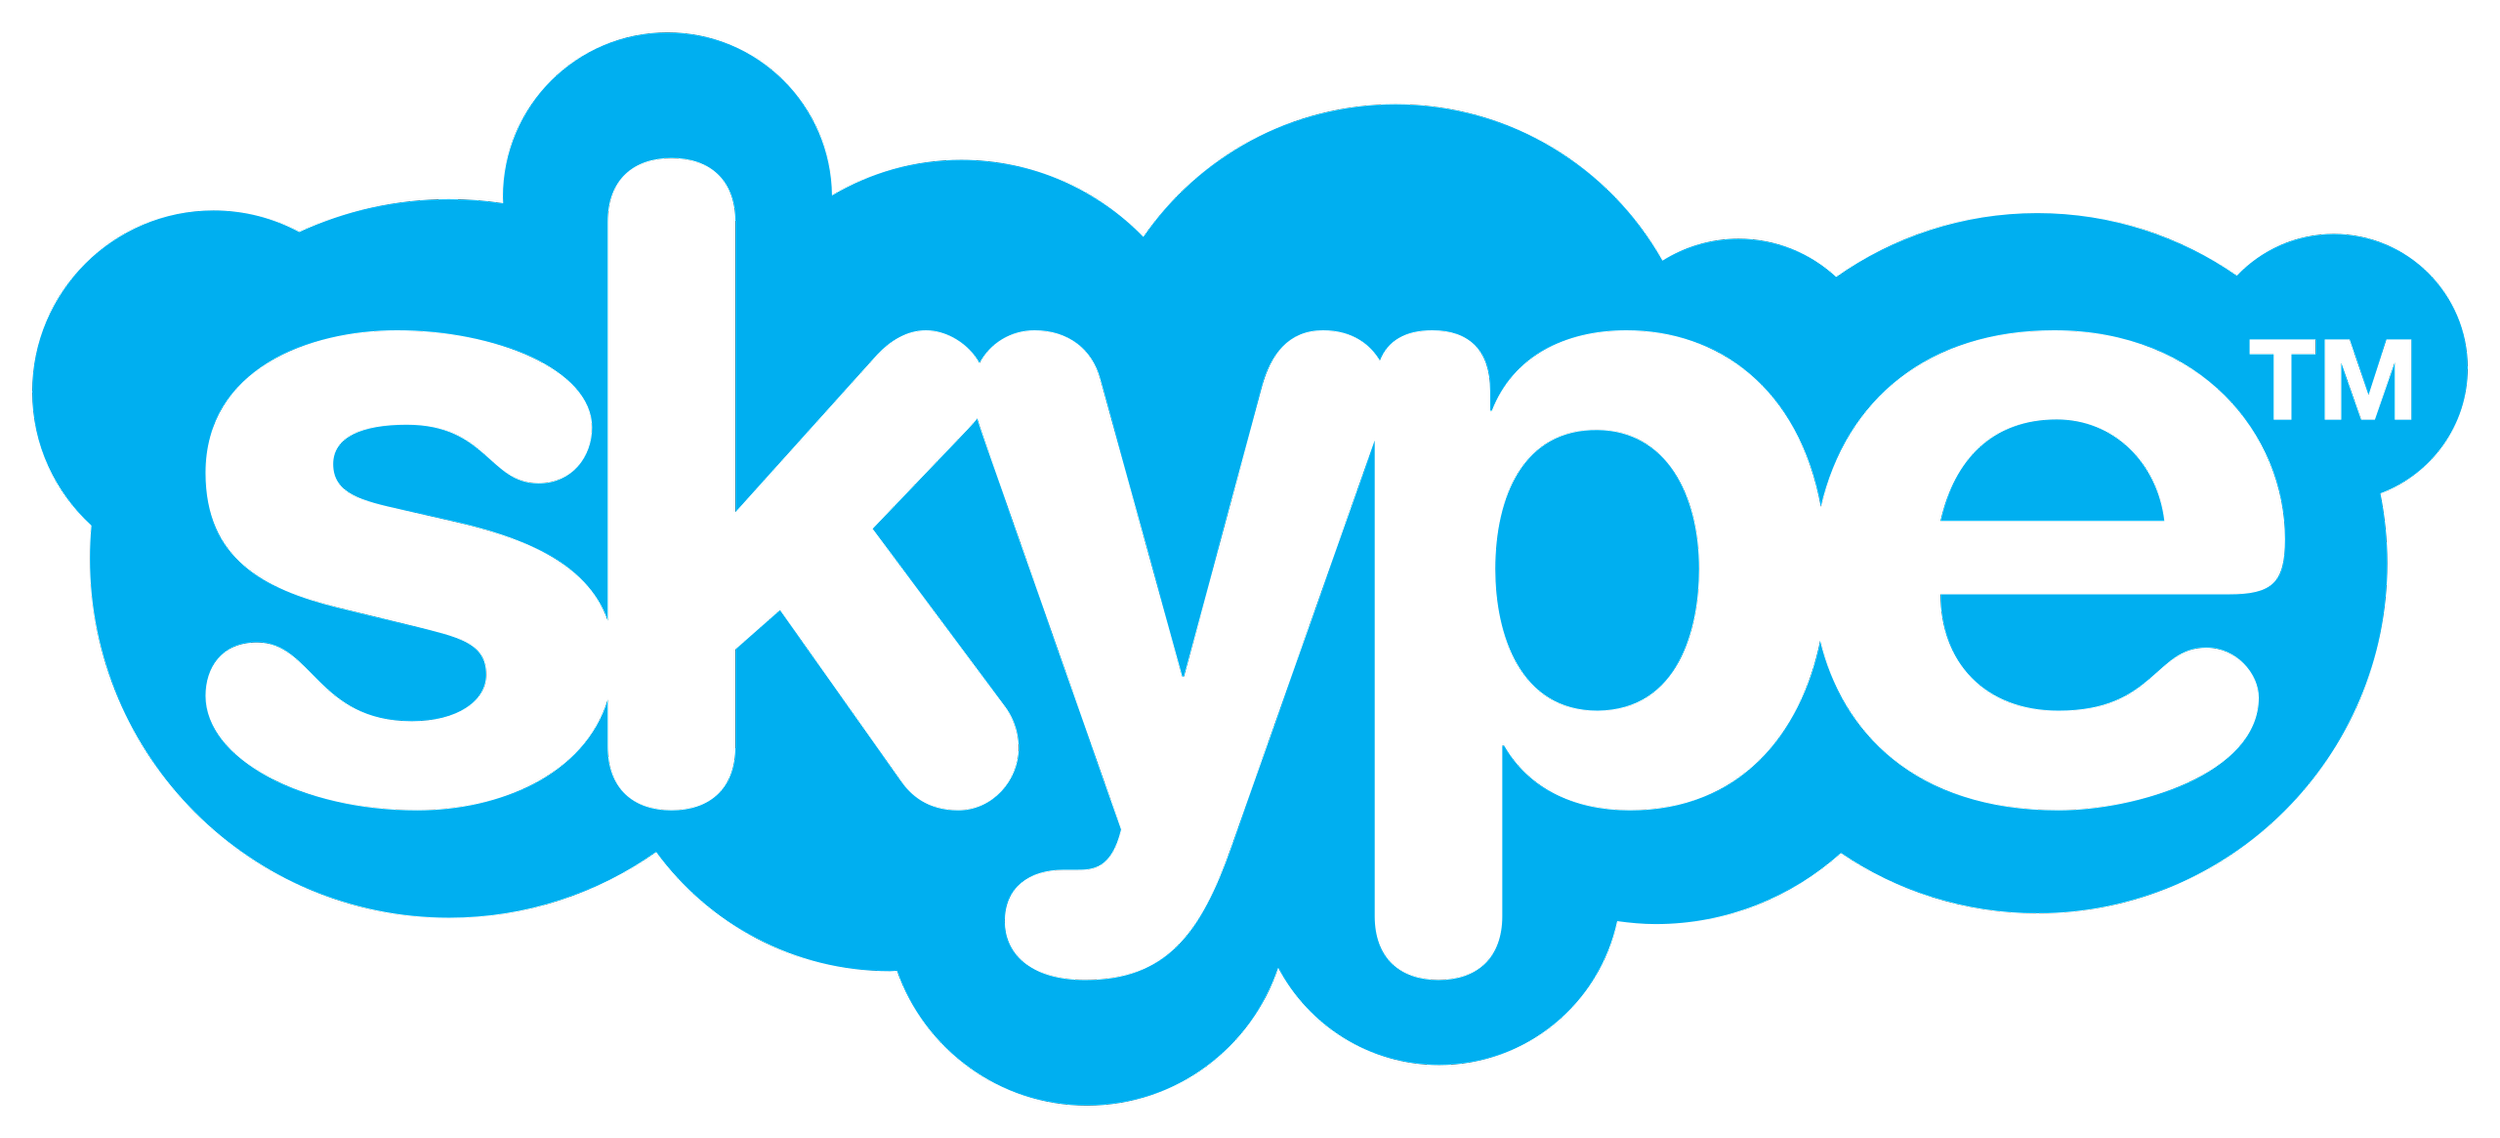 2560px-Skype_logo_(fully_transparent).svg.png